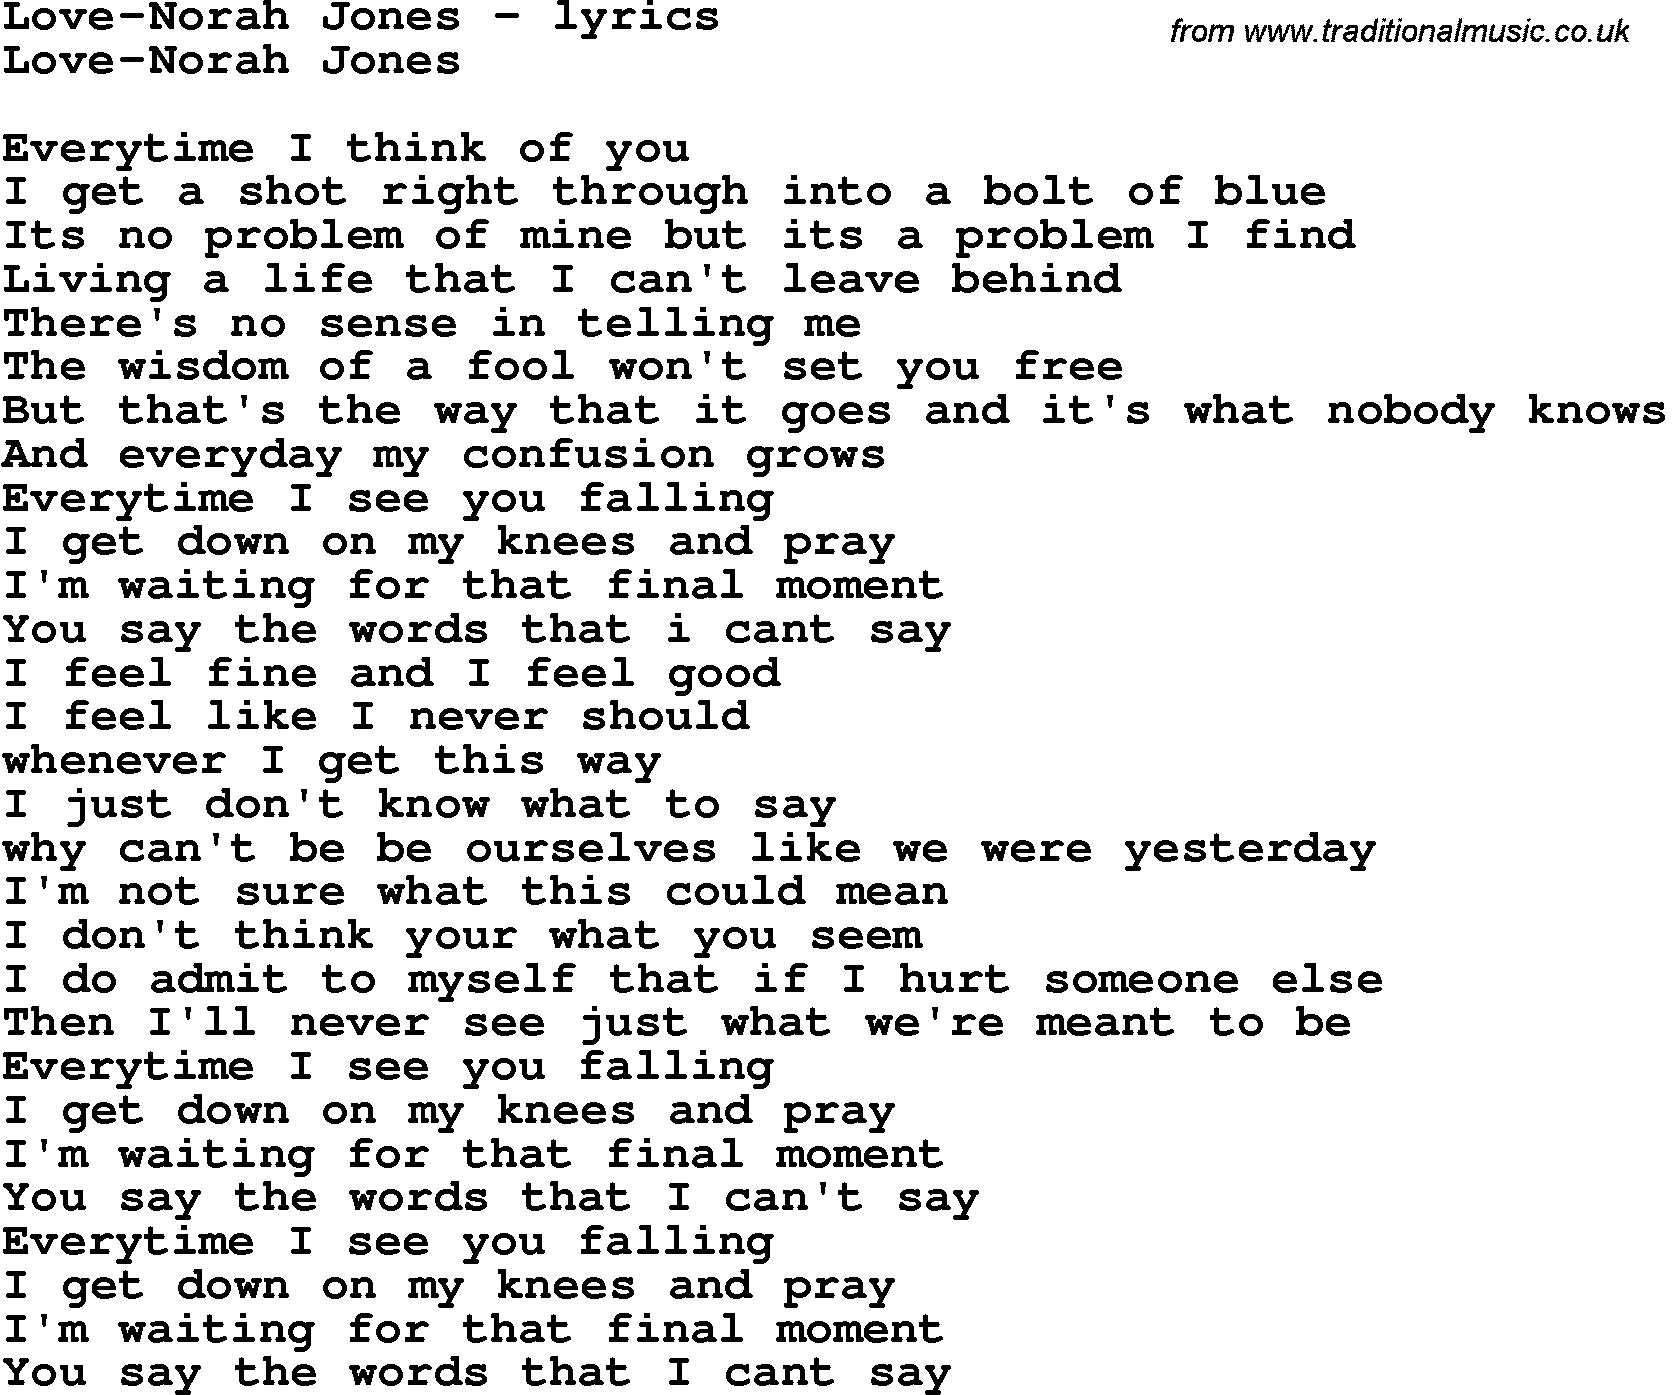 Love Song Lyrics for: Love-Norah Jones